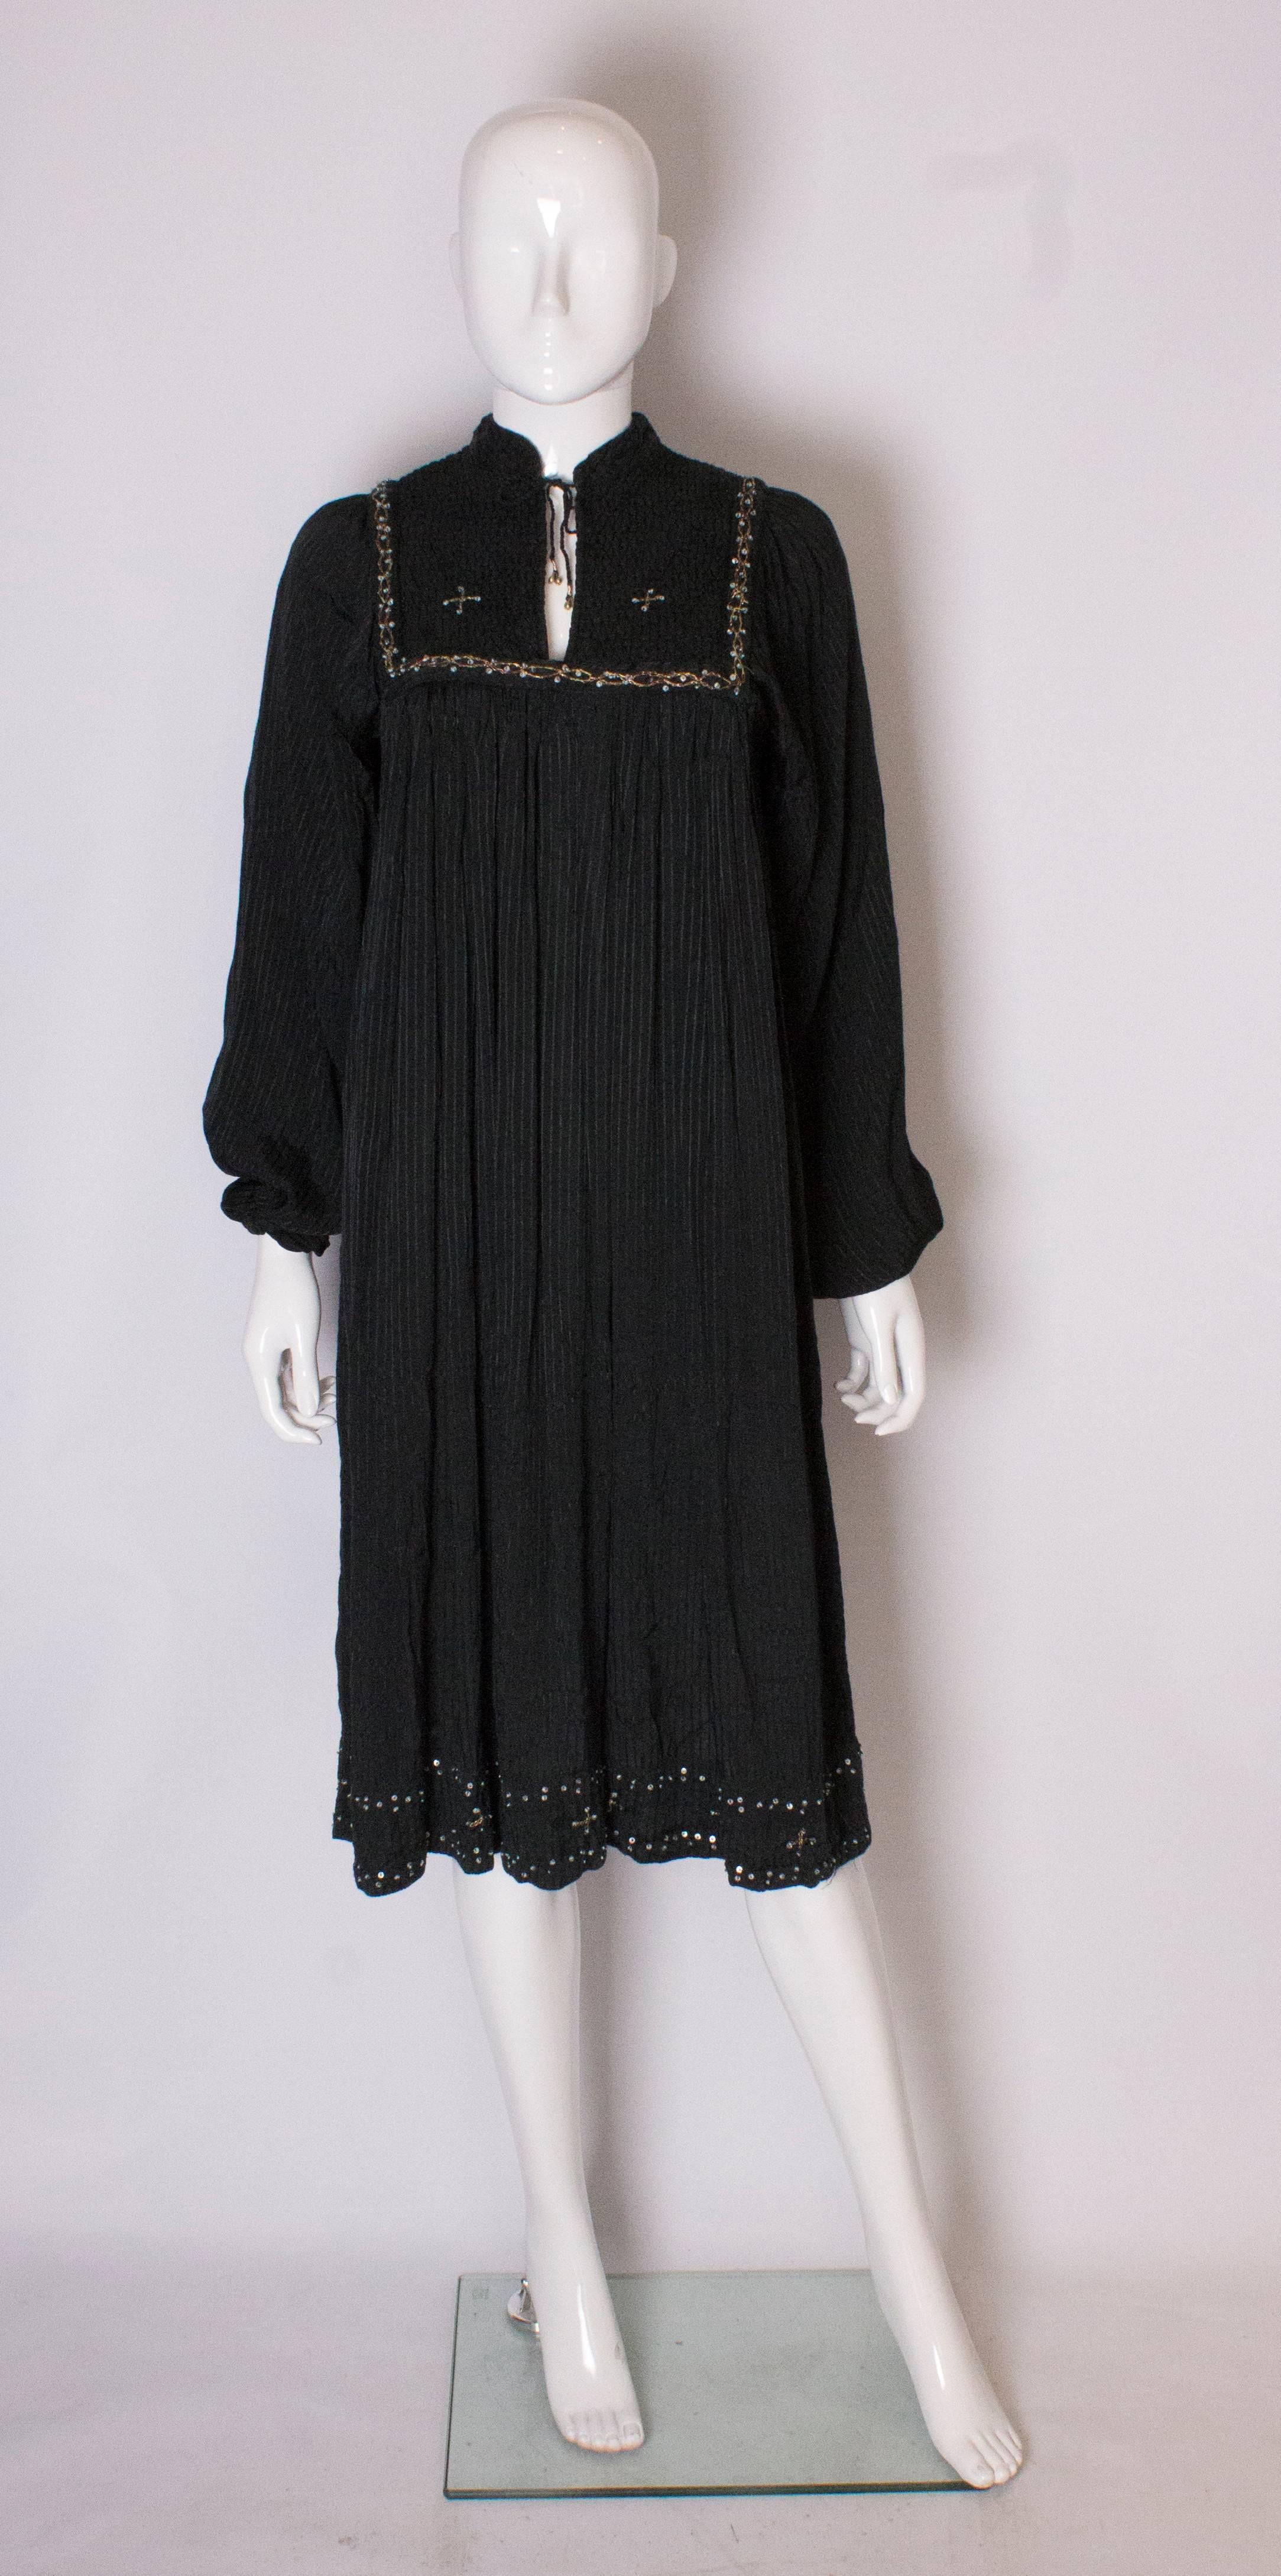 Un vintage chic et facile à porter  robe d'été. La robe est faite d'un tissu noir à rayures, avec des détails de matelassage sur la poitrine. Il est doté d'un lien à l'encolure et de poignets élastiques.